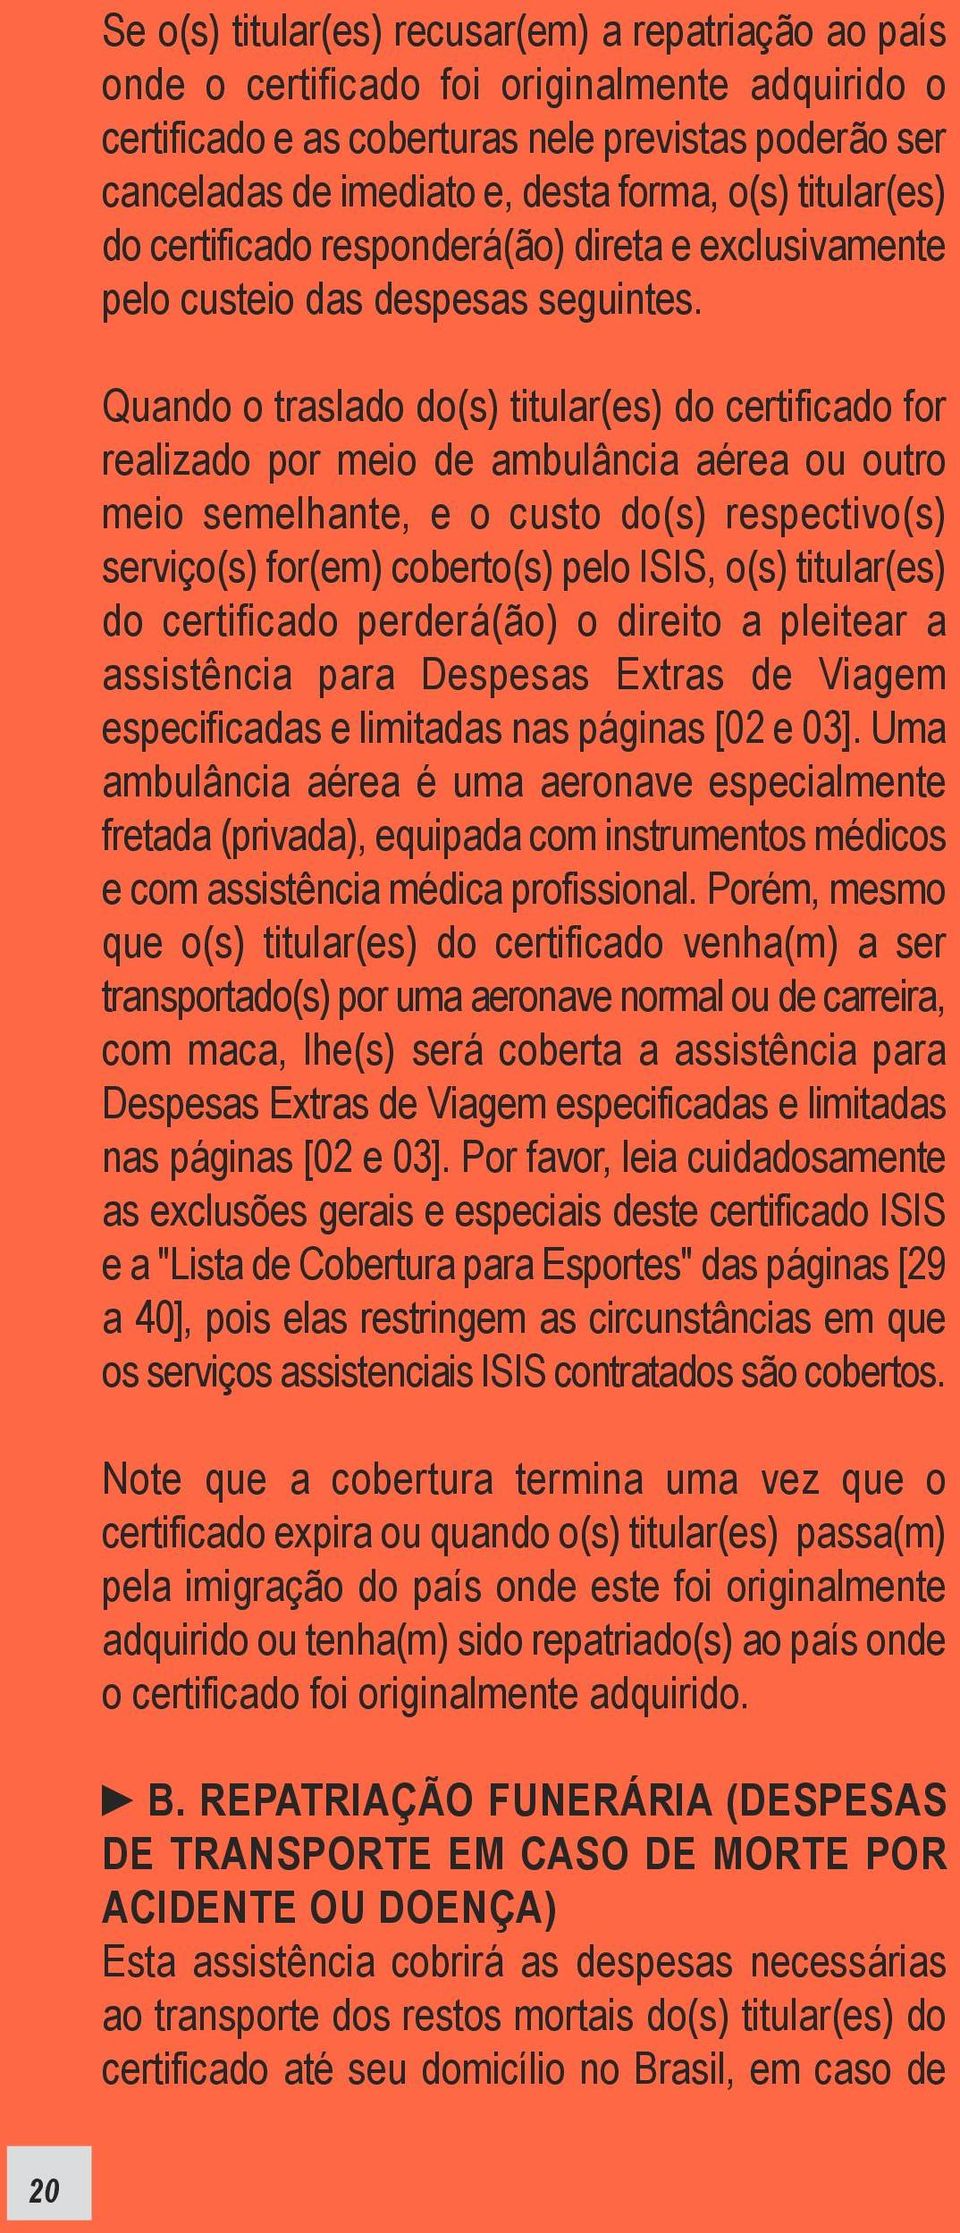 Quando o traslado do(s) titular(es) do certificado for realizado por meio de ambulância aérea ou outro meio semelhante, e o custo do(s) respectivo(s) serviço(s) for(em) coberto(s) pelo ISIS, o(s)